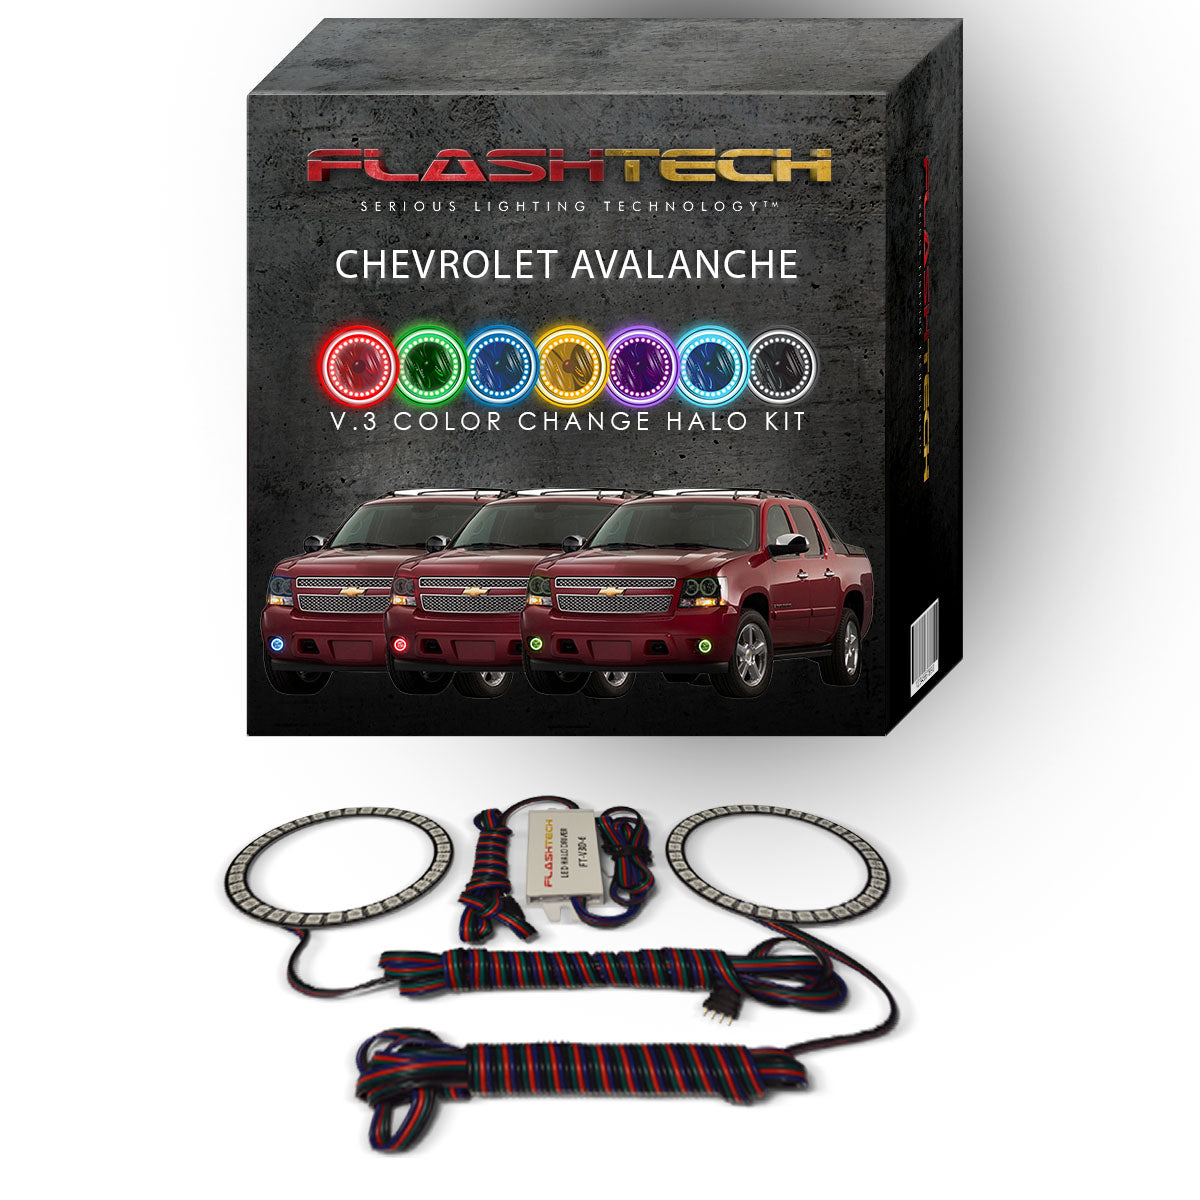 Chevrolet-Avalanche-2007, 2008, 2009, 2010, 2011, 2012, 2013-LED-Halo-Fog Lights-RGB-No Remote-CY-AV0713-V3F